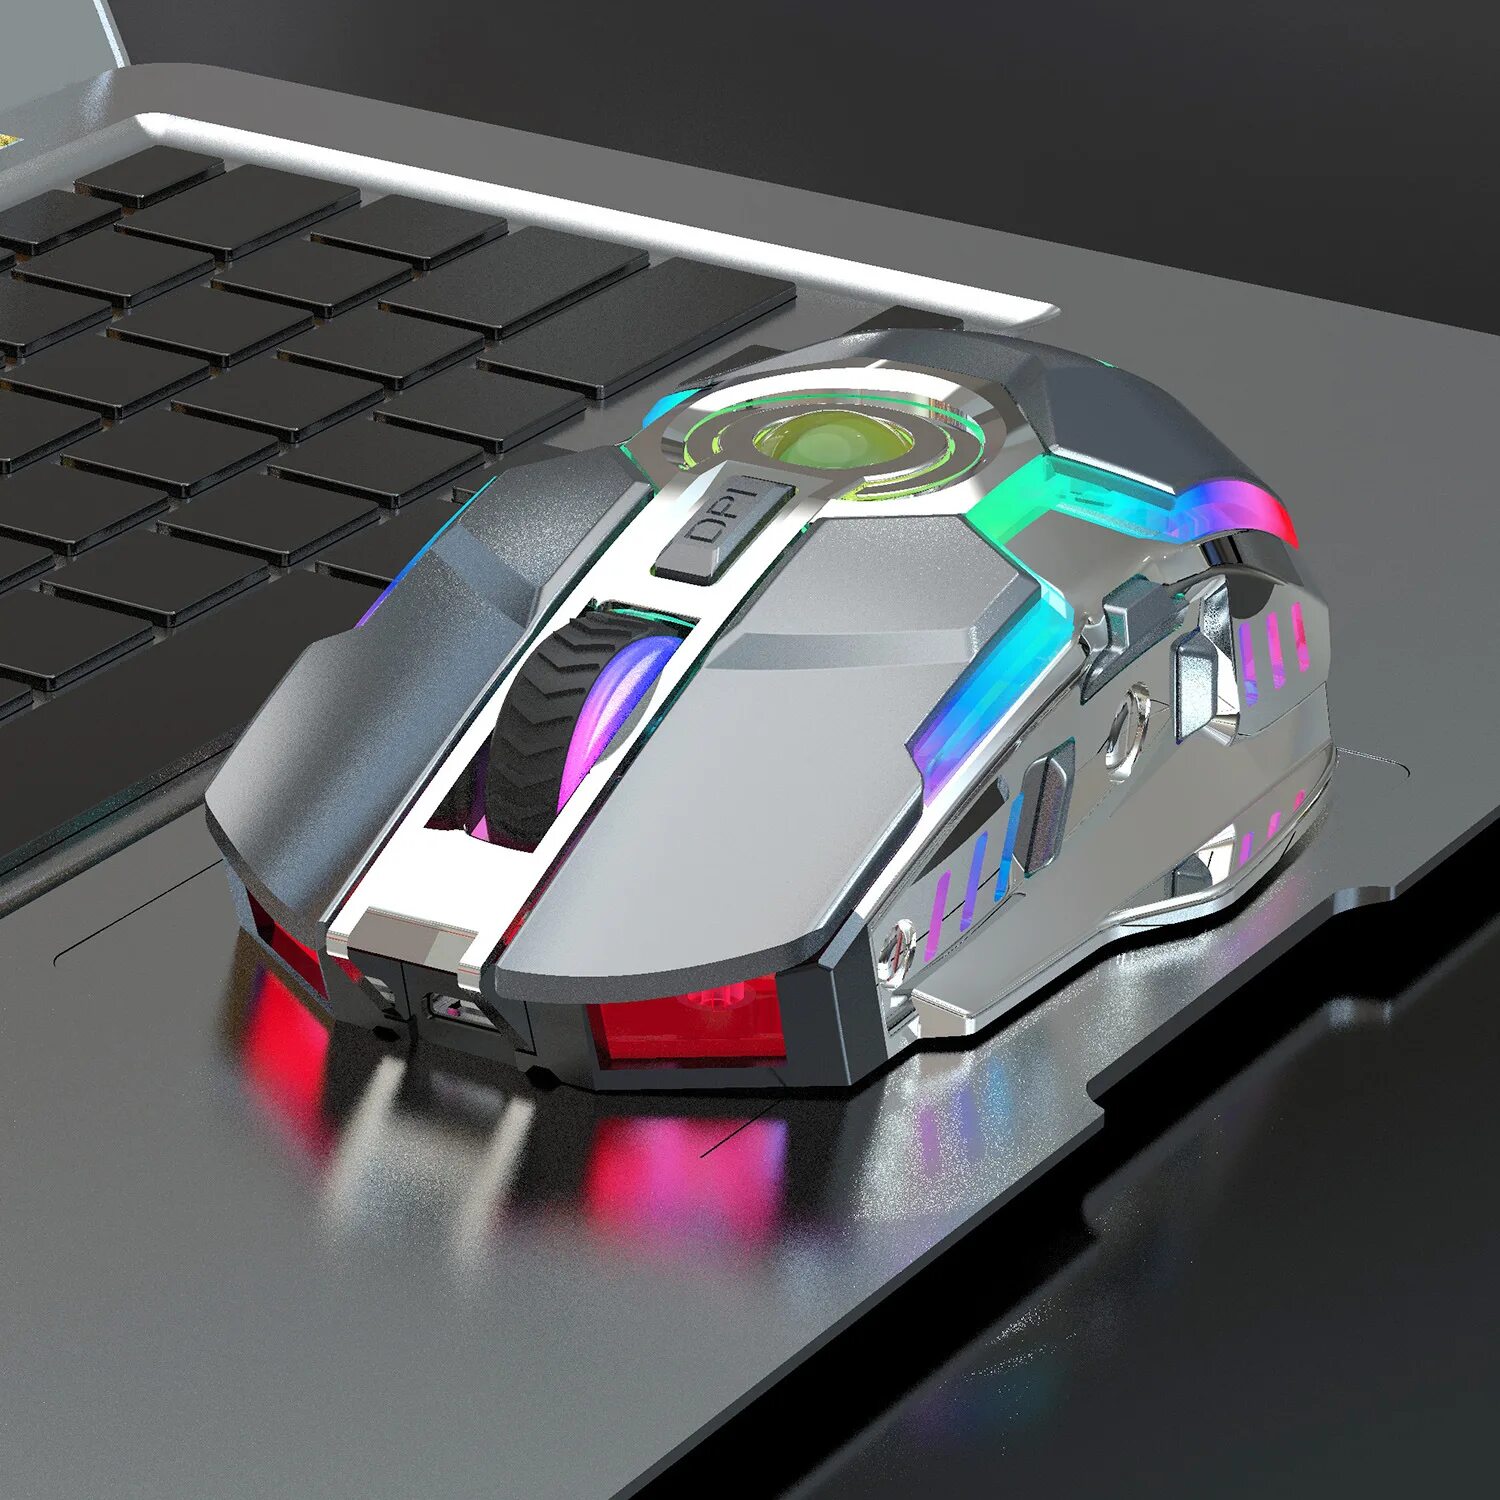 Игровые мышки беспроводные с подсветкой. Мышка для ноутбука беспроводная РЖБ. АЛИЭКСПРЕСС игровая RGB мышь беспроводная. Игровая мышка светящаяся РГБ беспроводная. Беспроводная мышь с подсветкой Wireless Mouse.